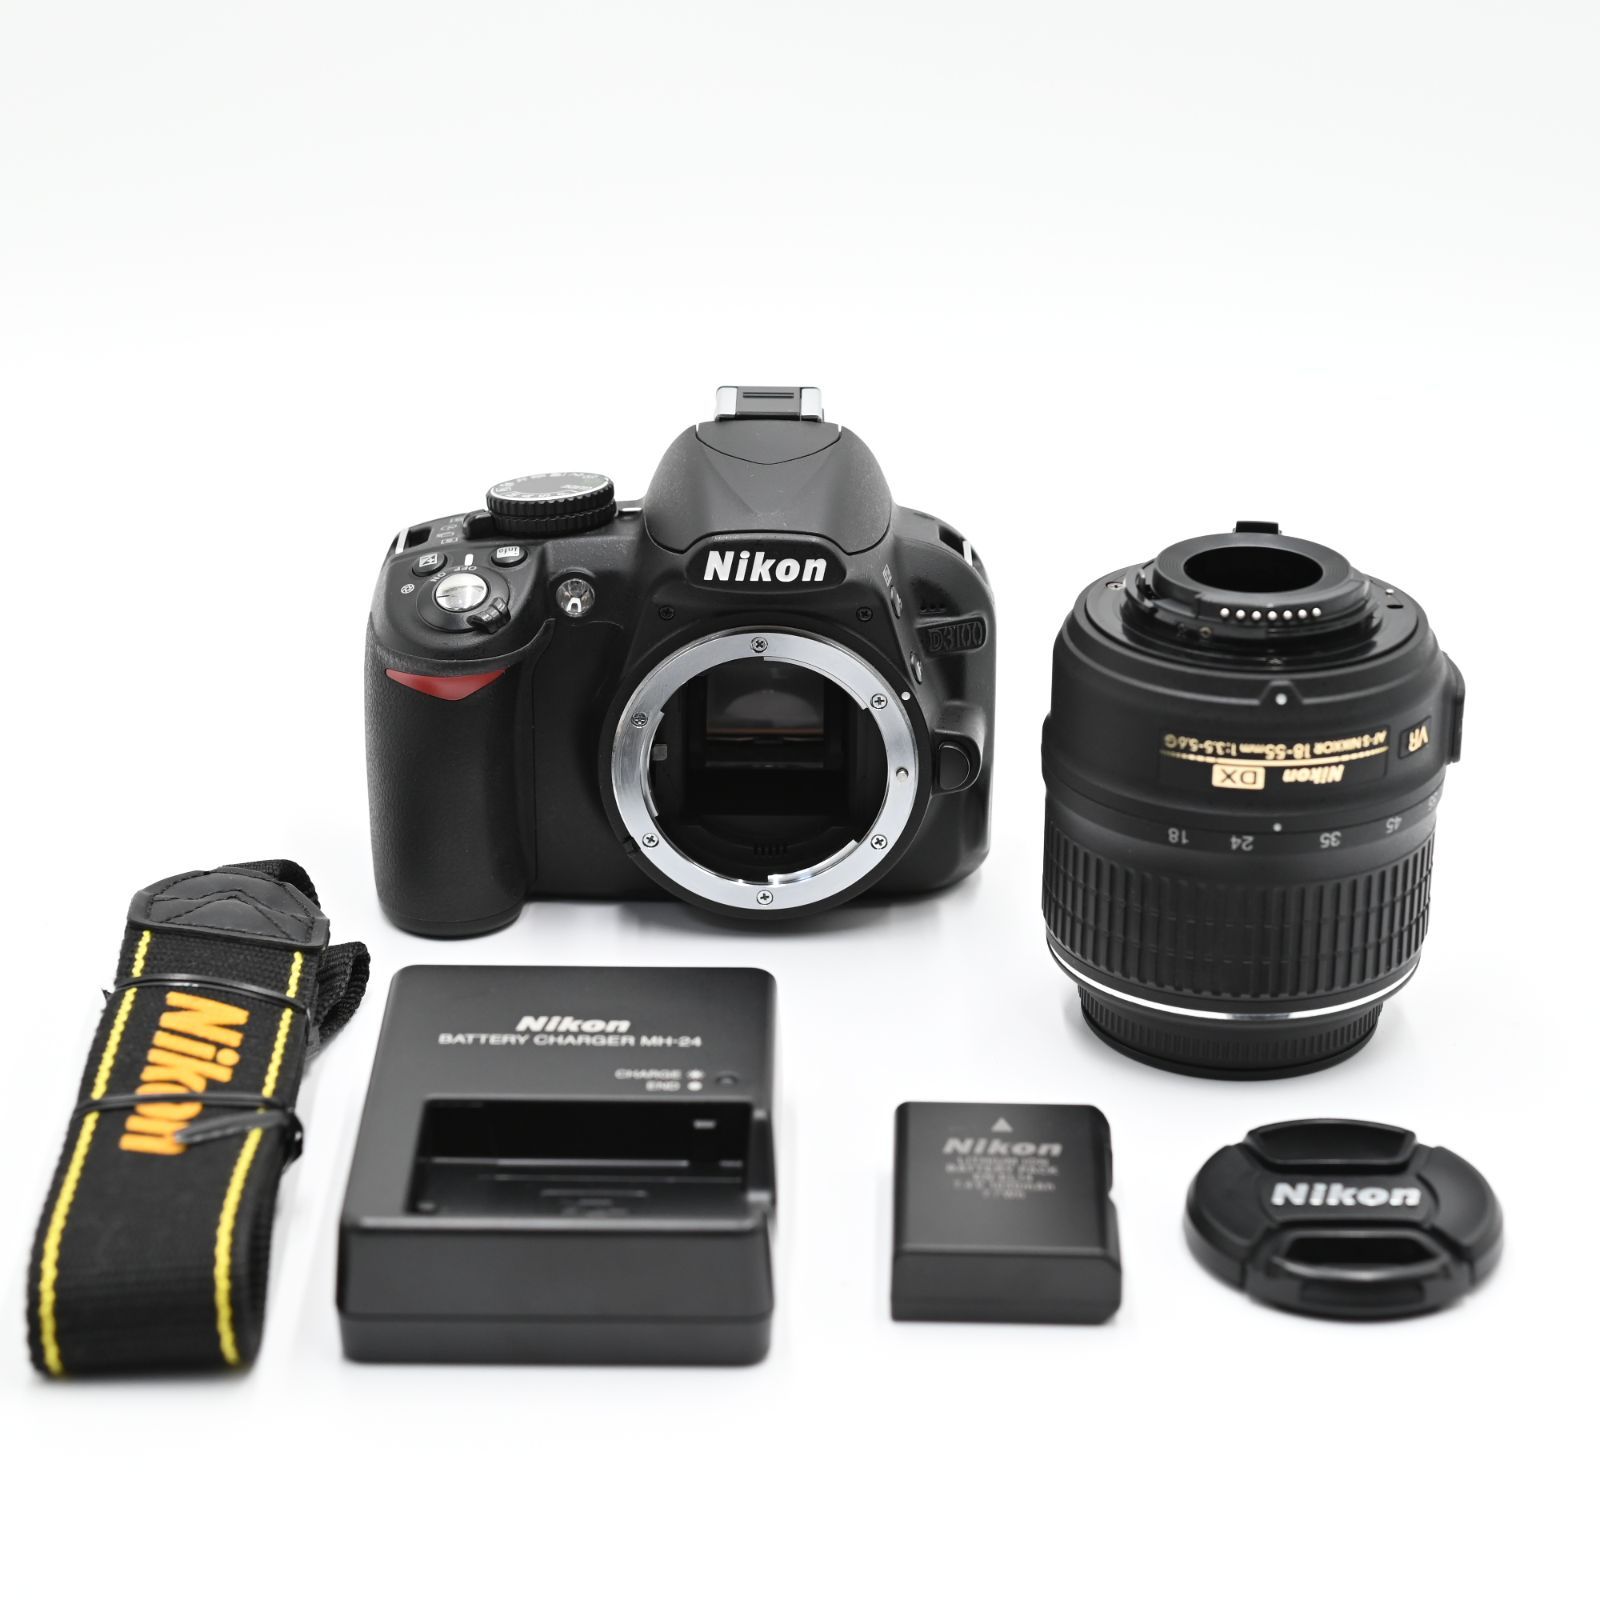 Nikon デジタル一眼レフカメラ D3100 レンズキット D3100LK - 1